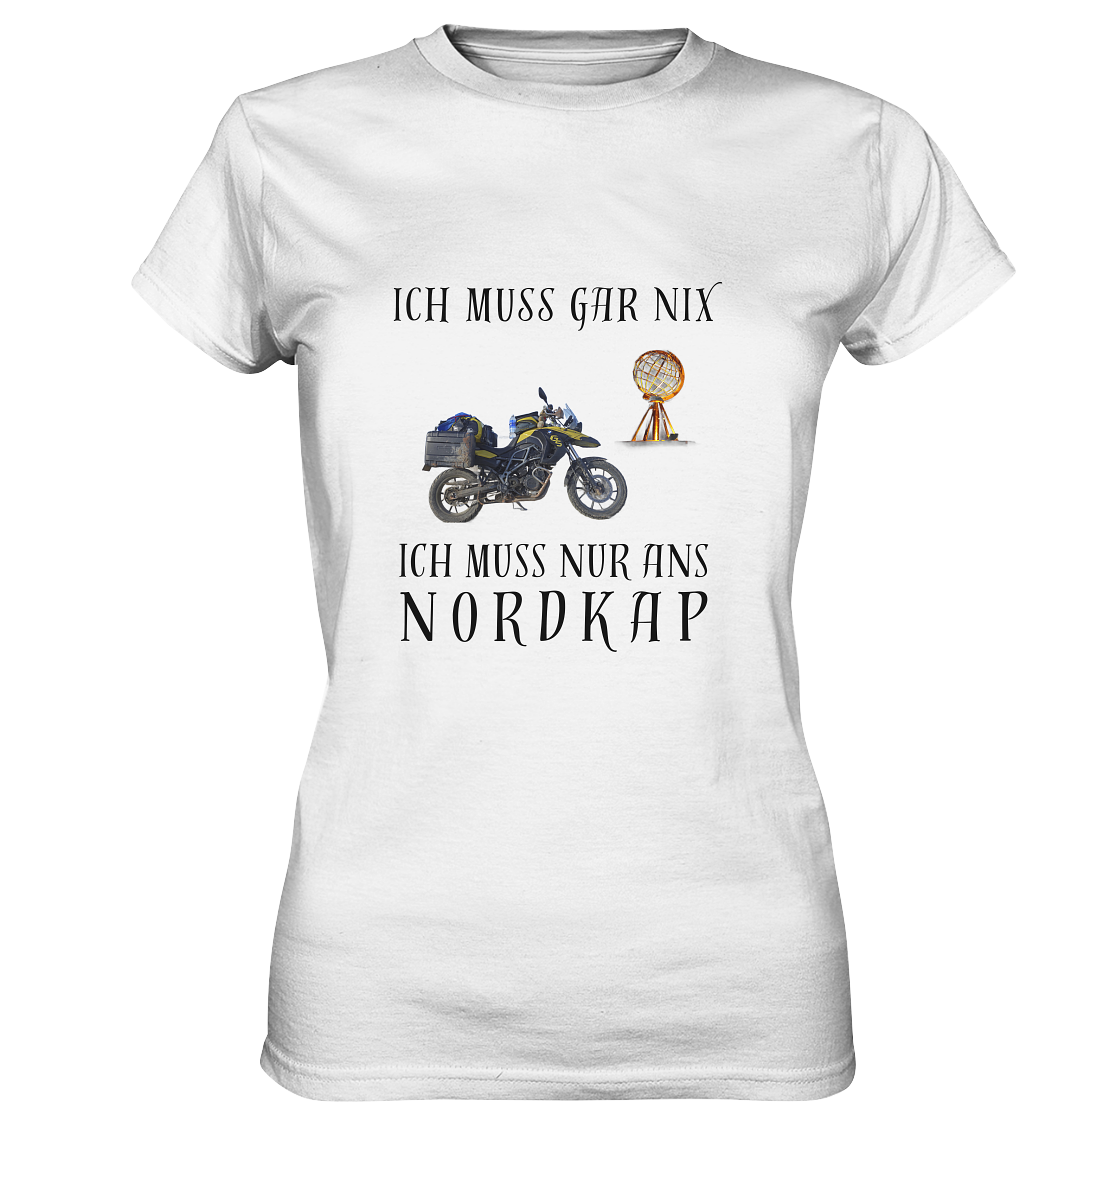 "Ich muss gar nix. Ich muss nur ans Nordkap" _ für mich | Damen-Shirt mit individuellem Motorradfoto-Druck + Nordkap-Spruch in dunklem Design